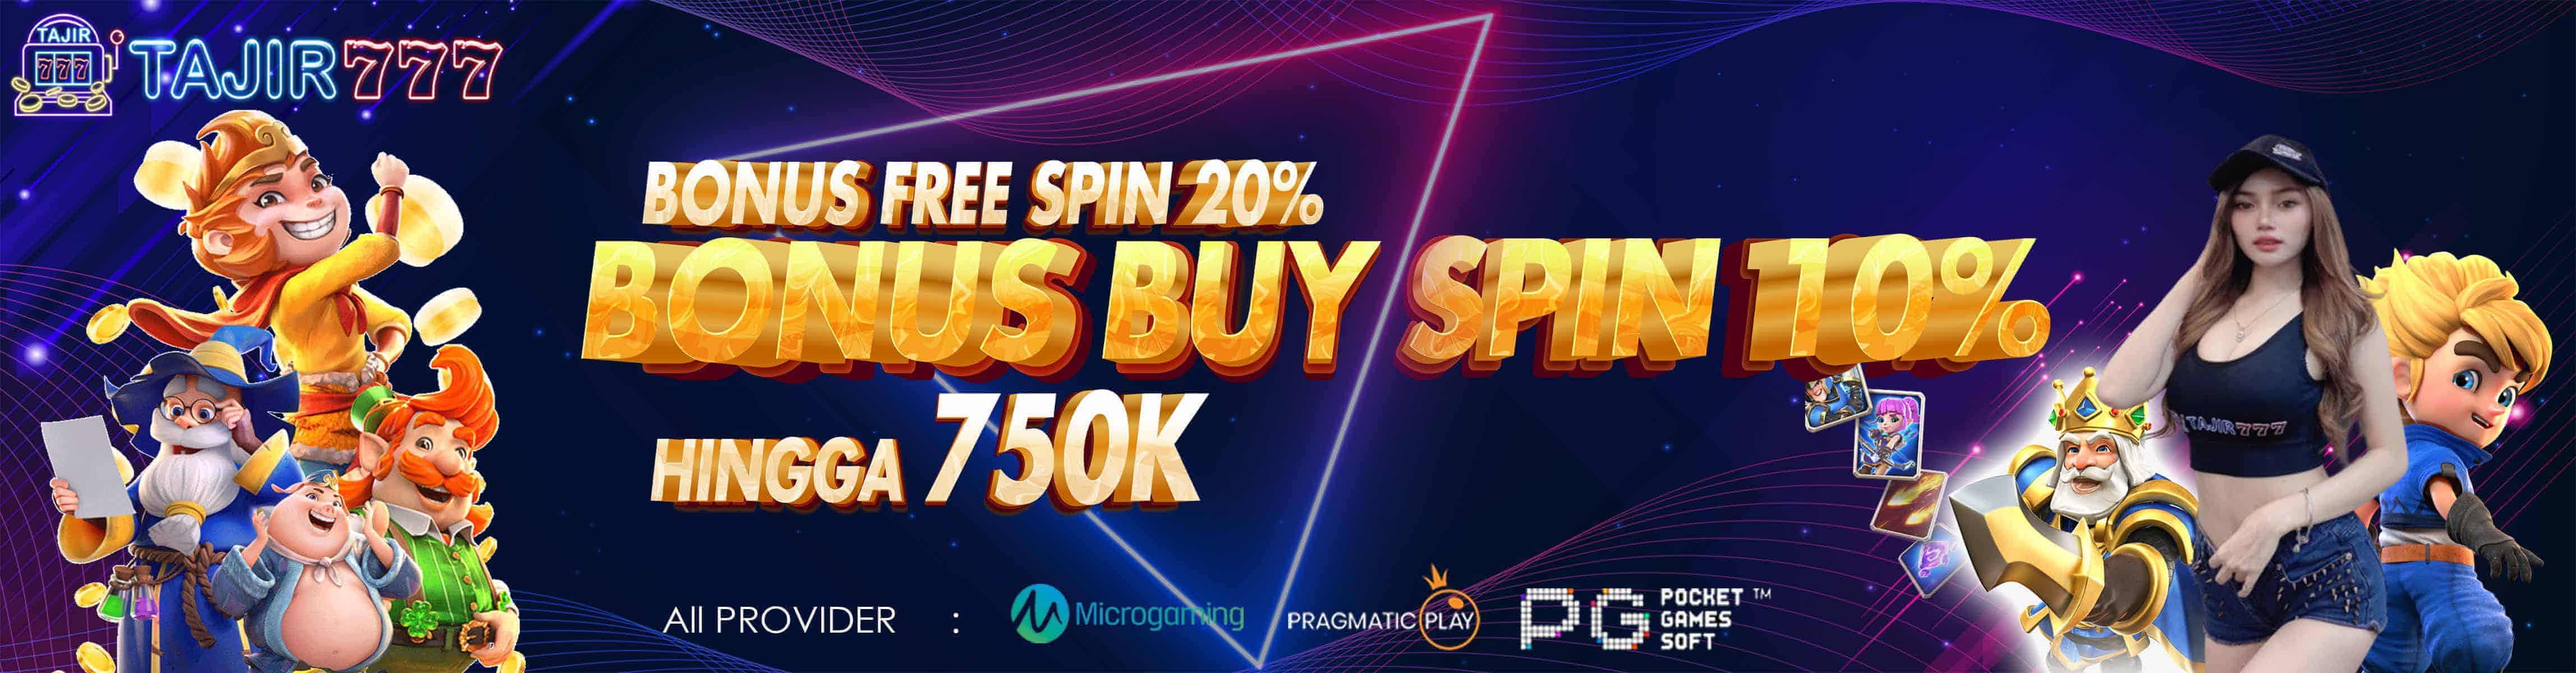 Bonus free spin buy spin ALL PROVIDER